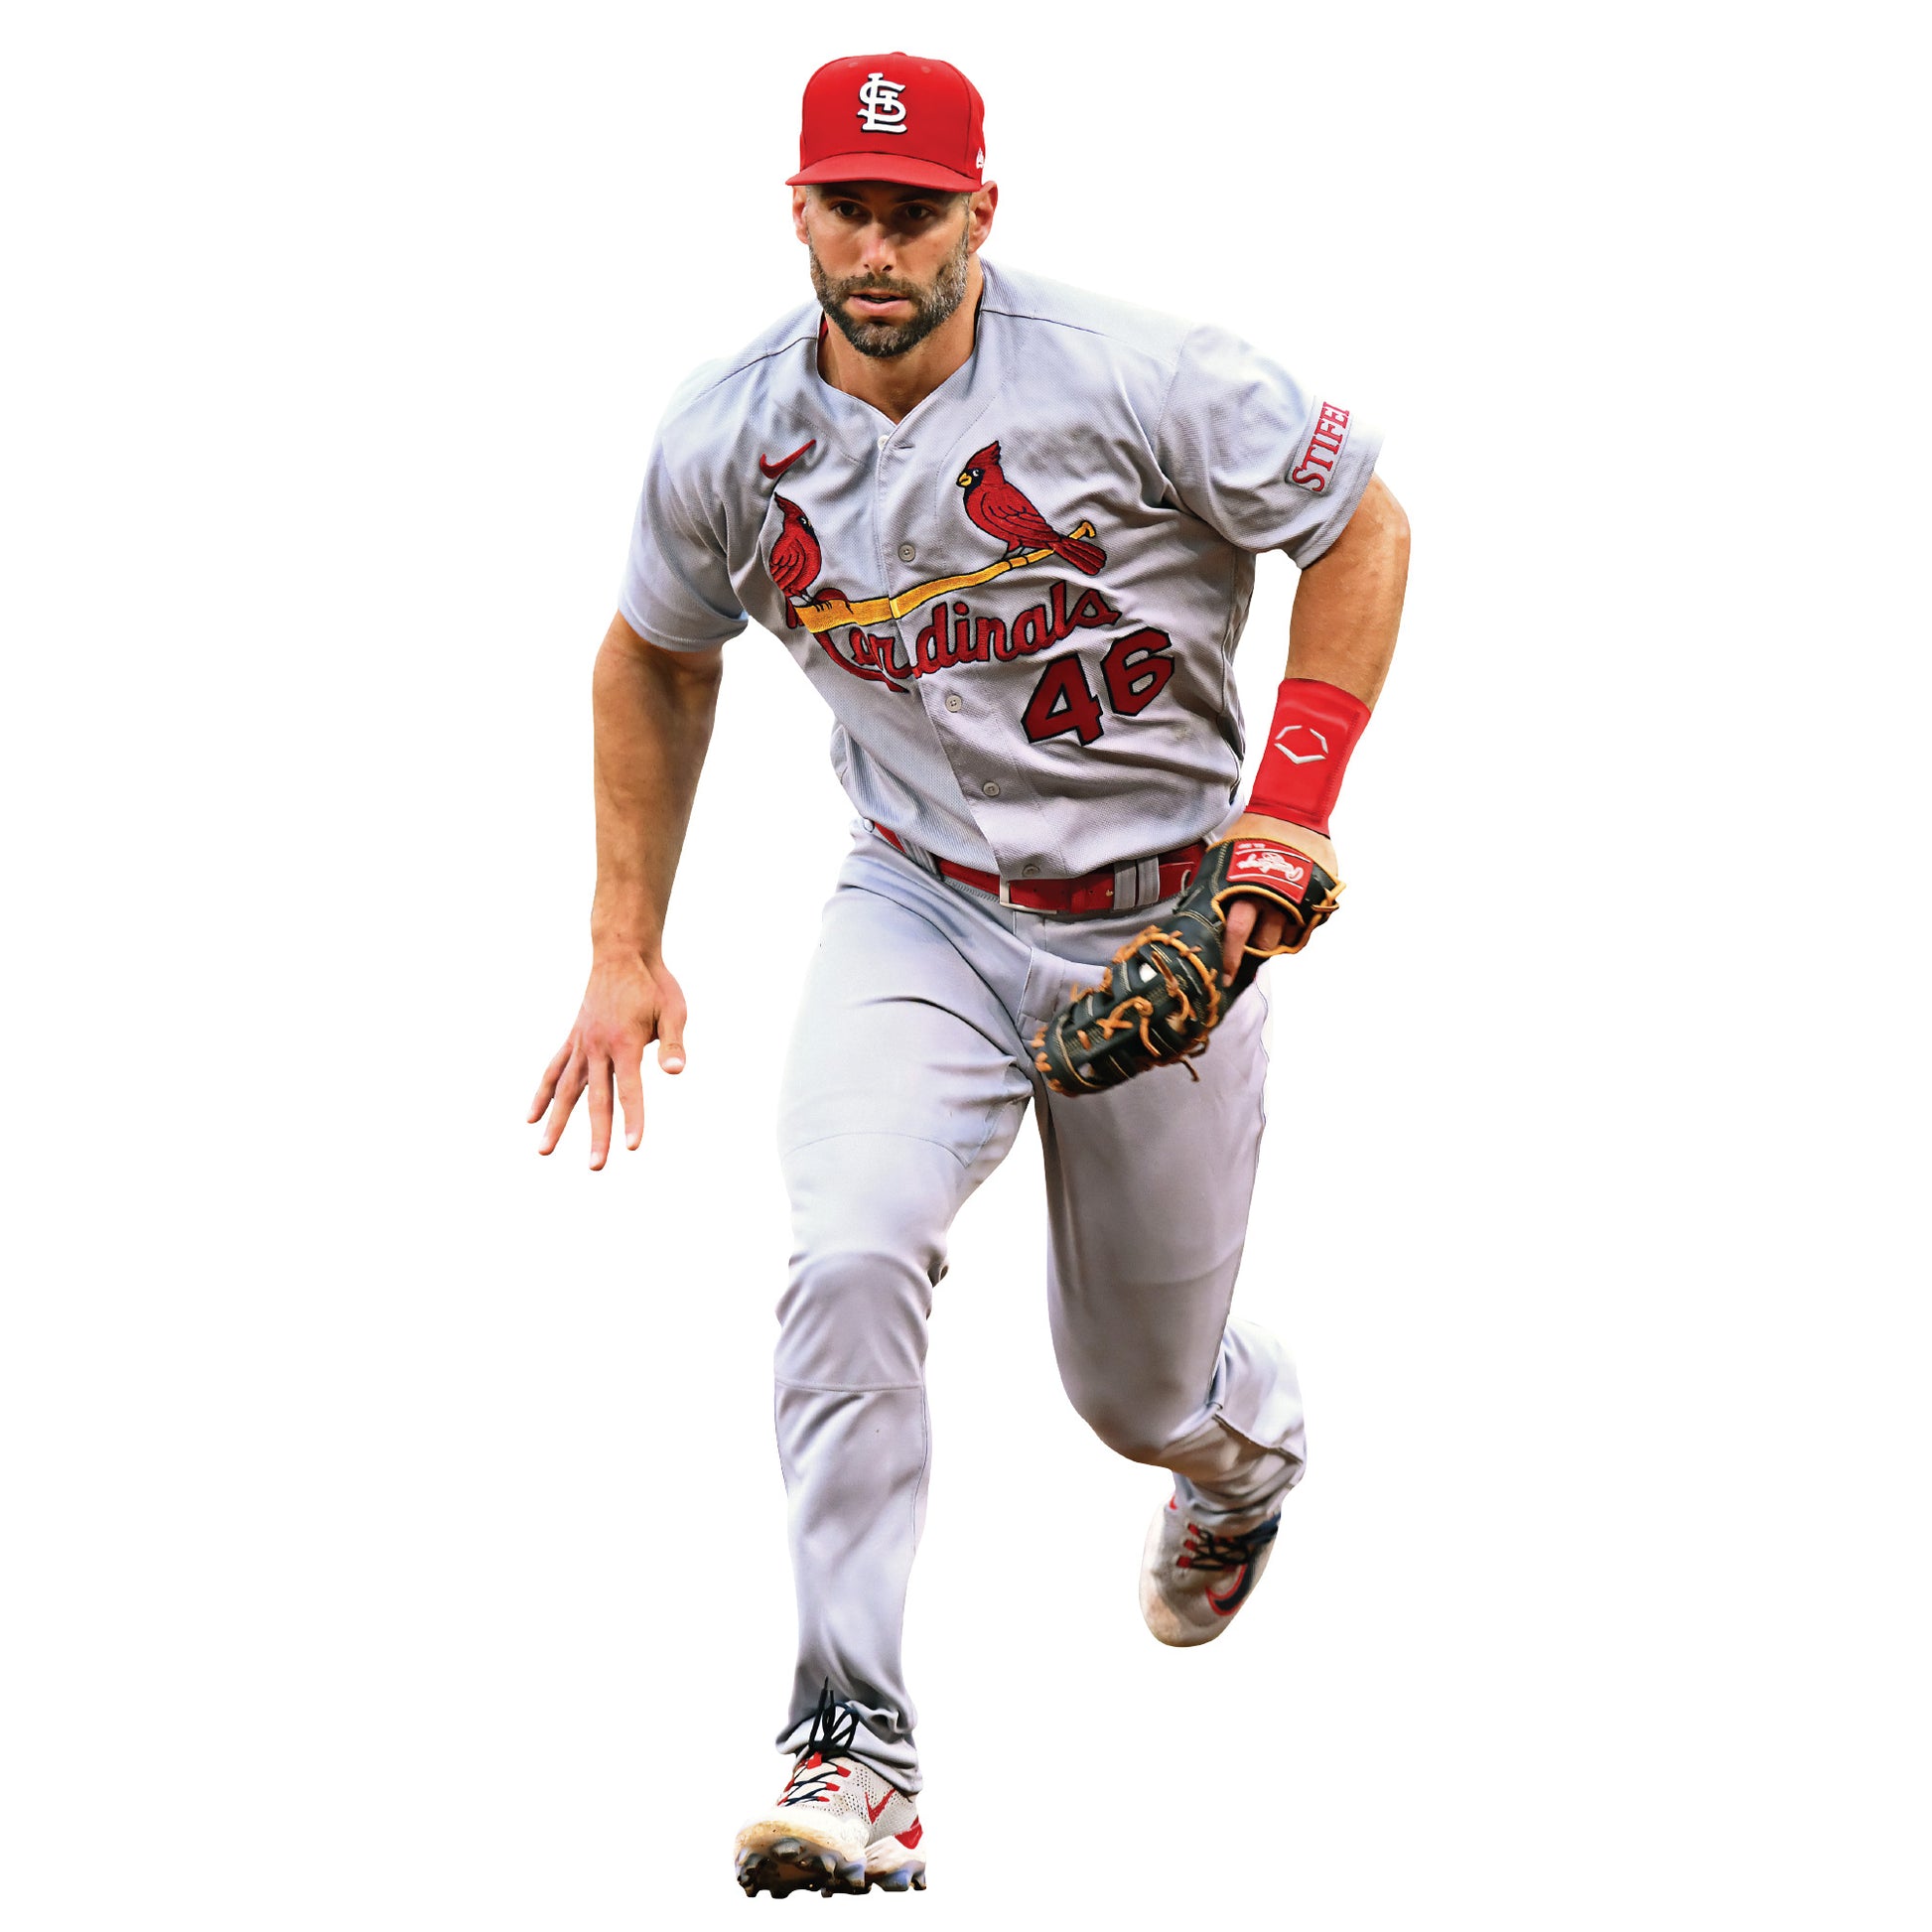 Paul Goldschmidt Poster St. Louis Cardinals Baseball Print 